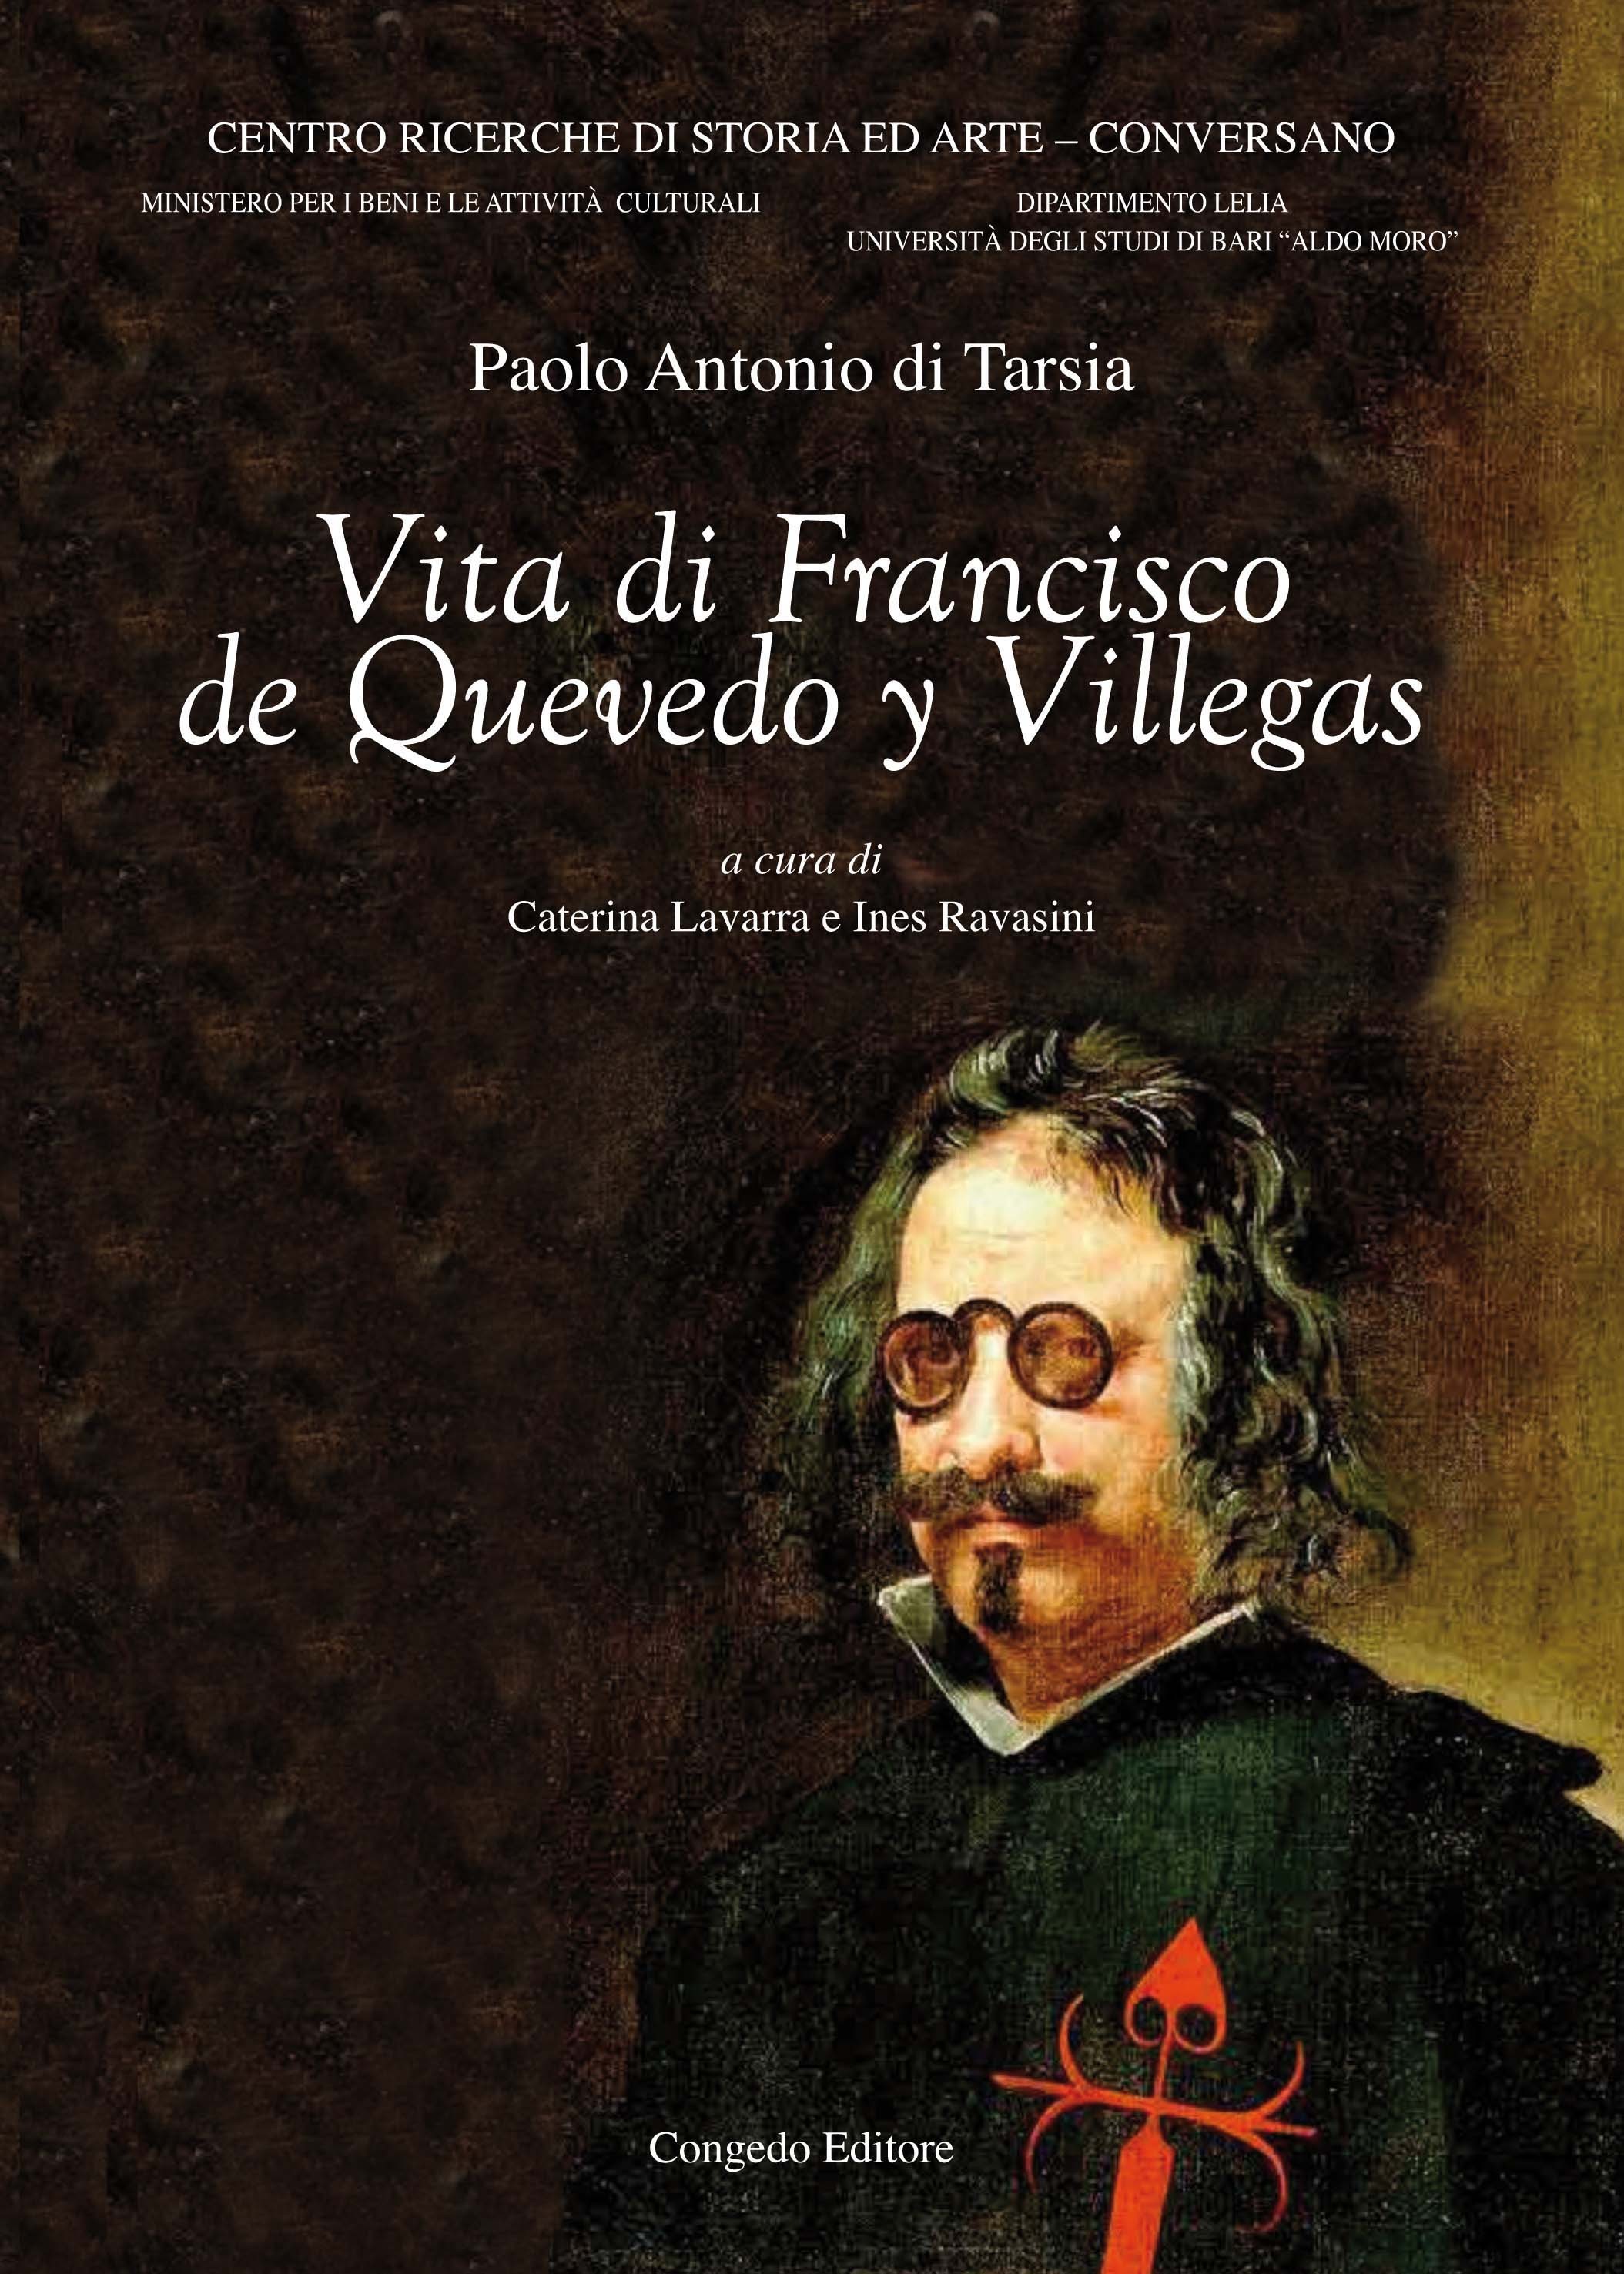 Vita di Francisco de Quevedo y Villegas